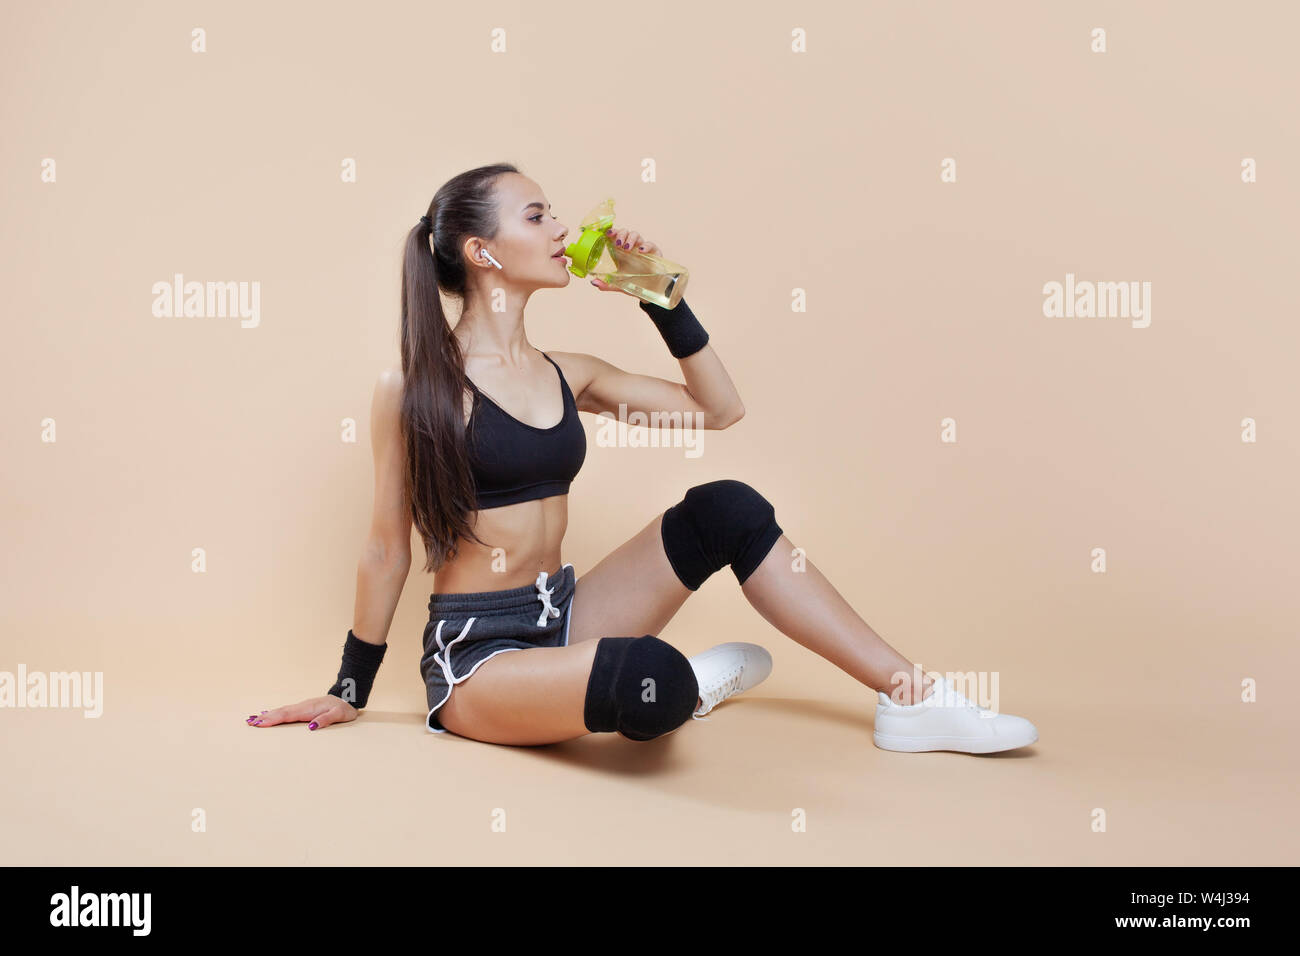 Ein niedliches athletische brunette Mädchen, in einer enganliegenden Sport einheitliche, sitzt, liegt nach dem Training, in schwarz Kniescheiben, mit einer Flasche für Sporternährung. Stockfoto